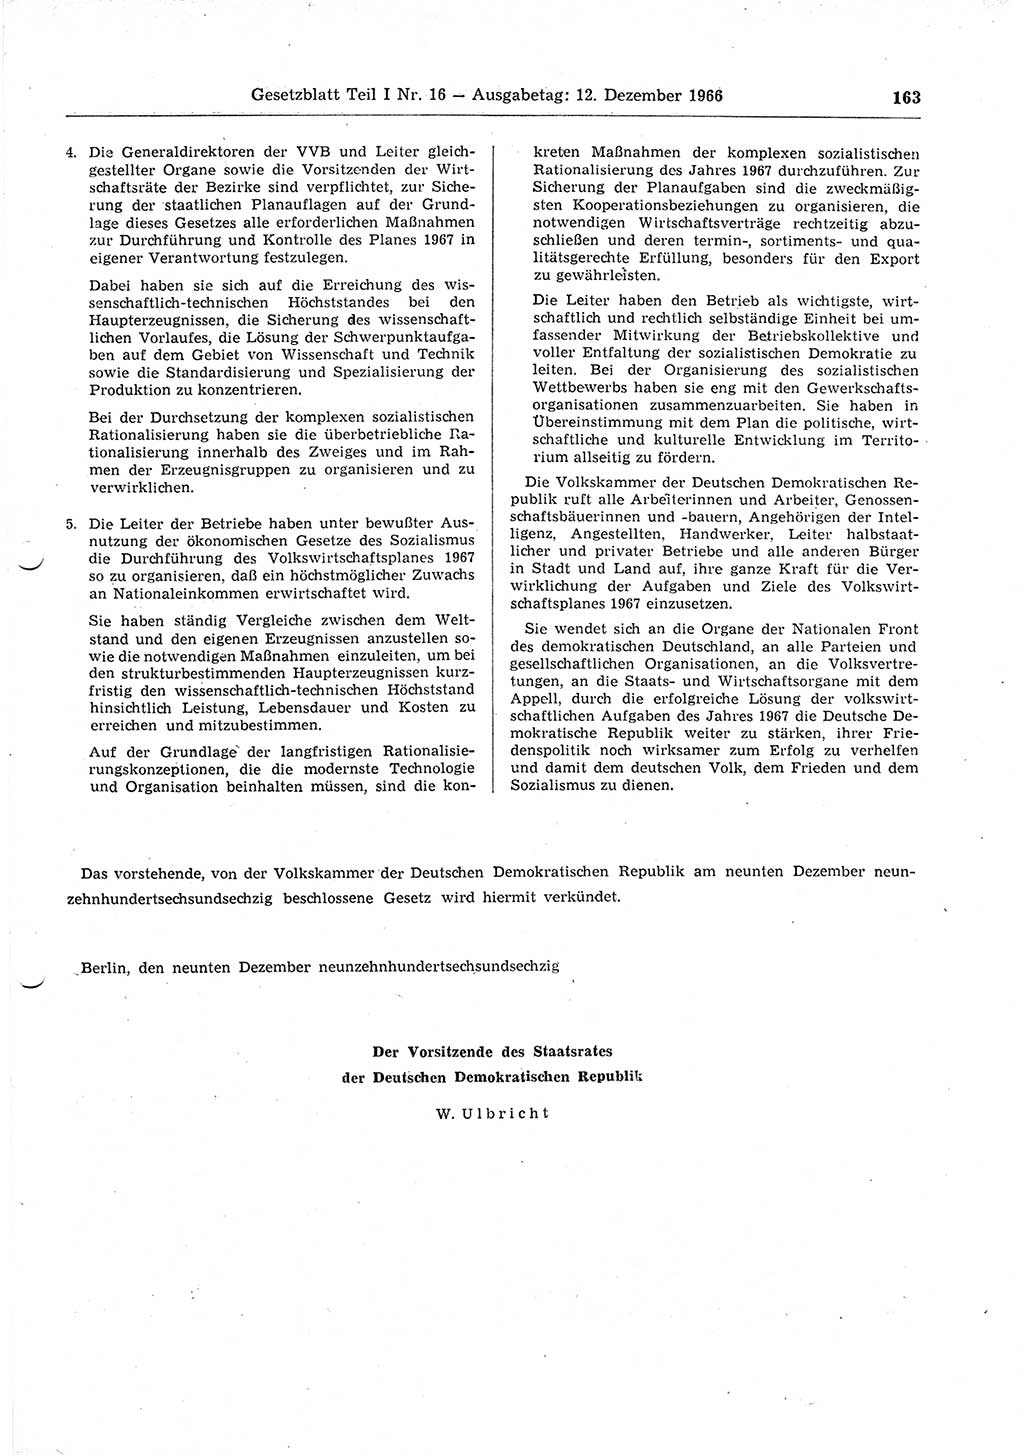 Gesetzblatt (GBl.) der Deutschen Demokratischen Republik (DDR) Teil Ⅰ 1966, Seite 163 (GBl. DDR Ⅰ 1966, S. 163)